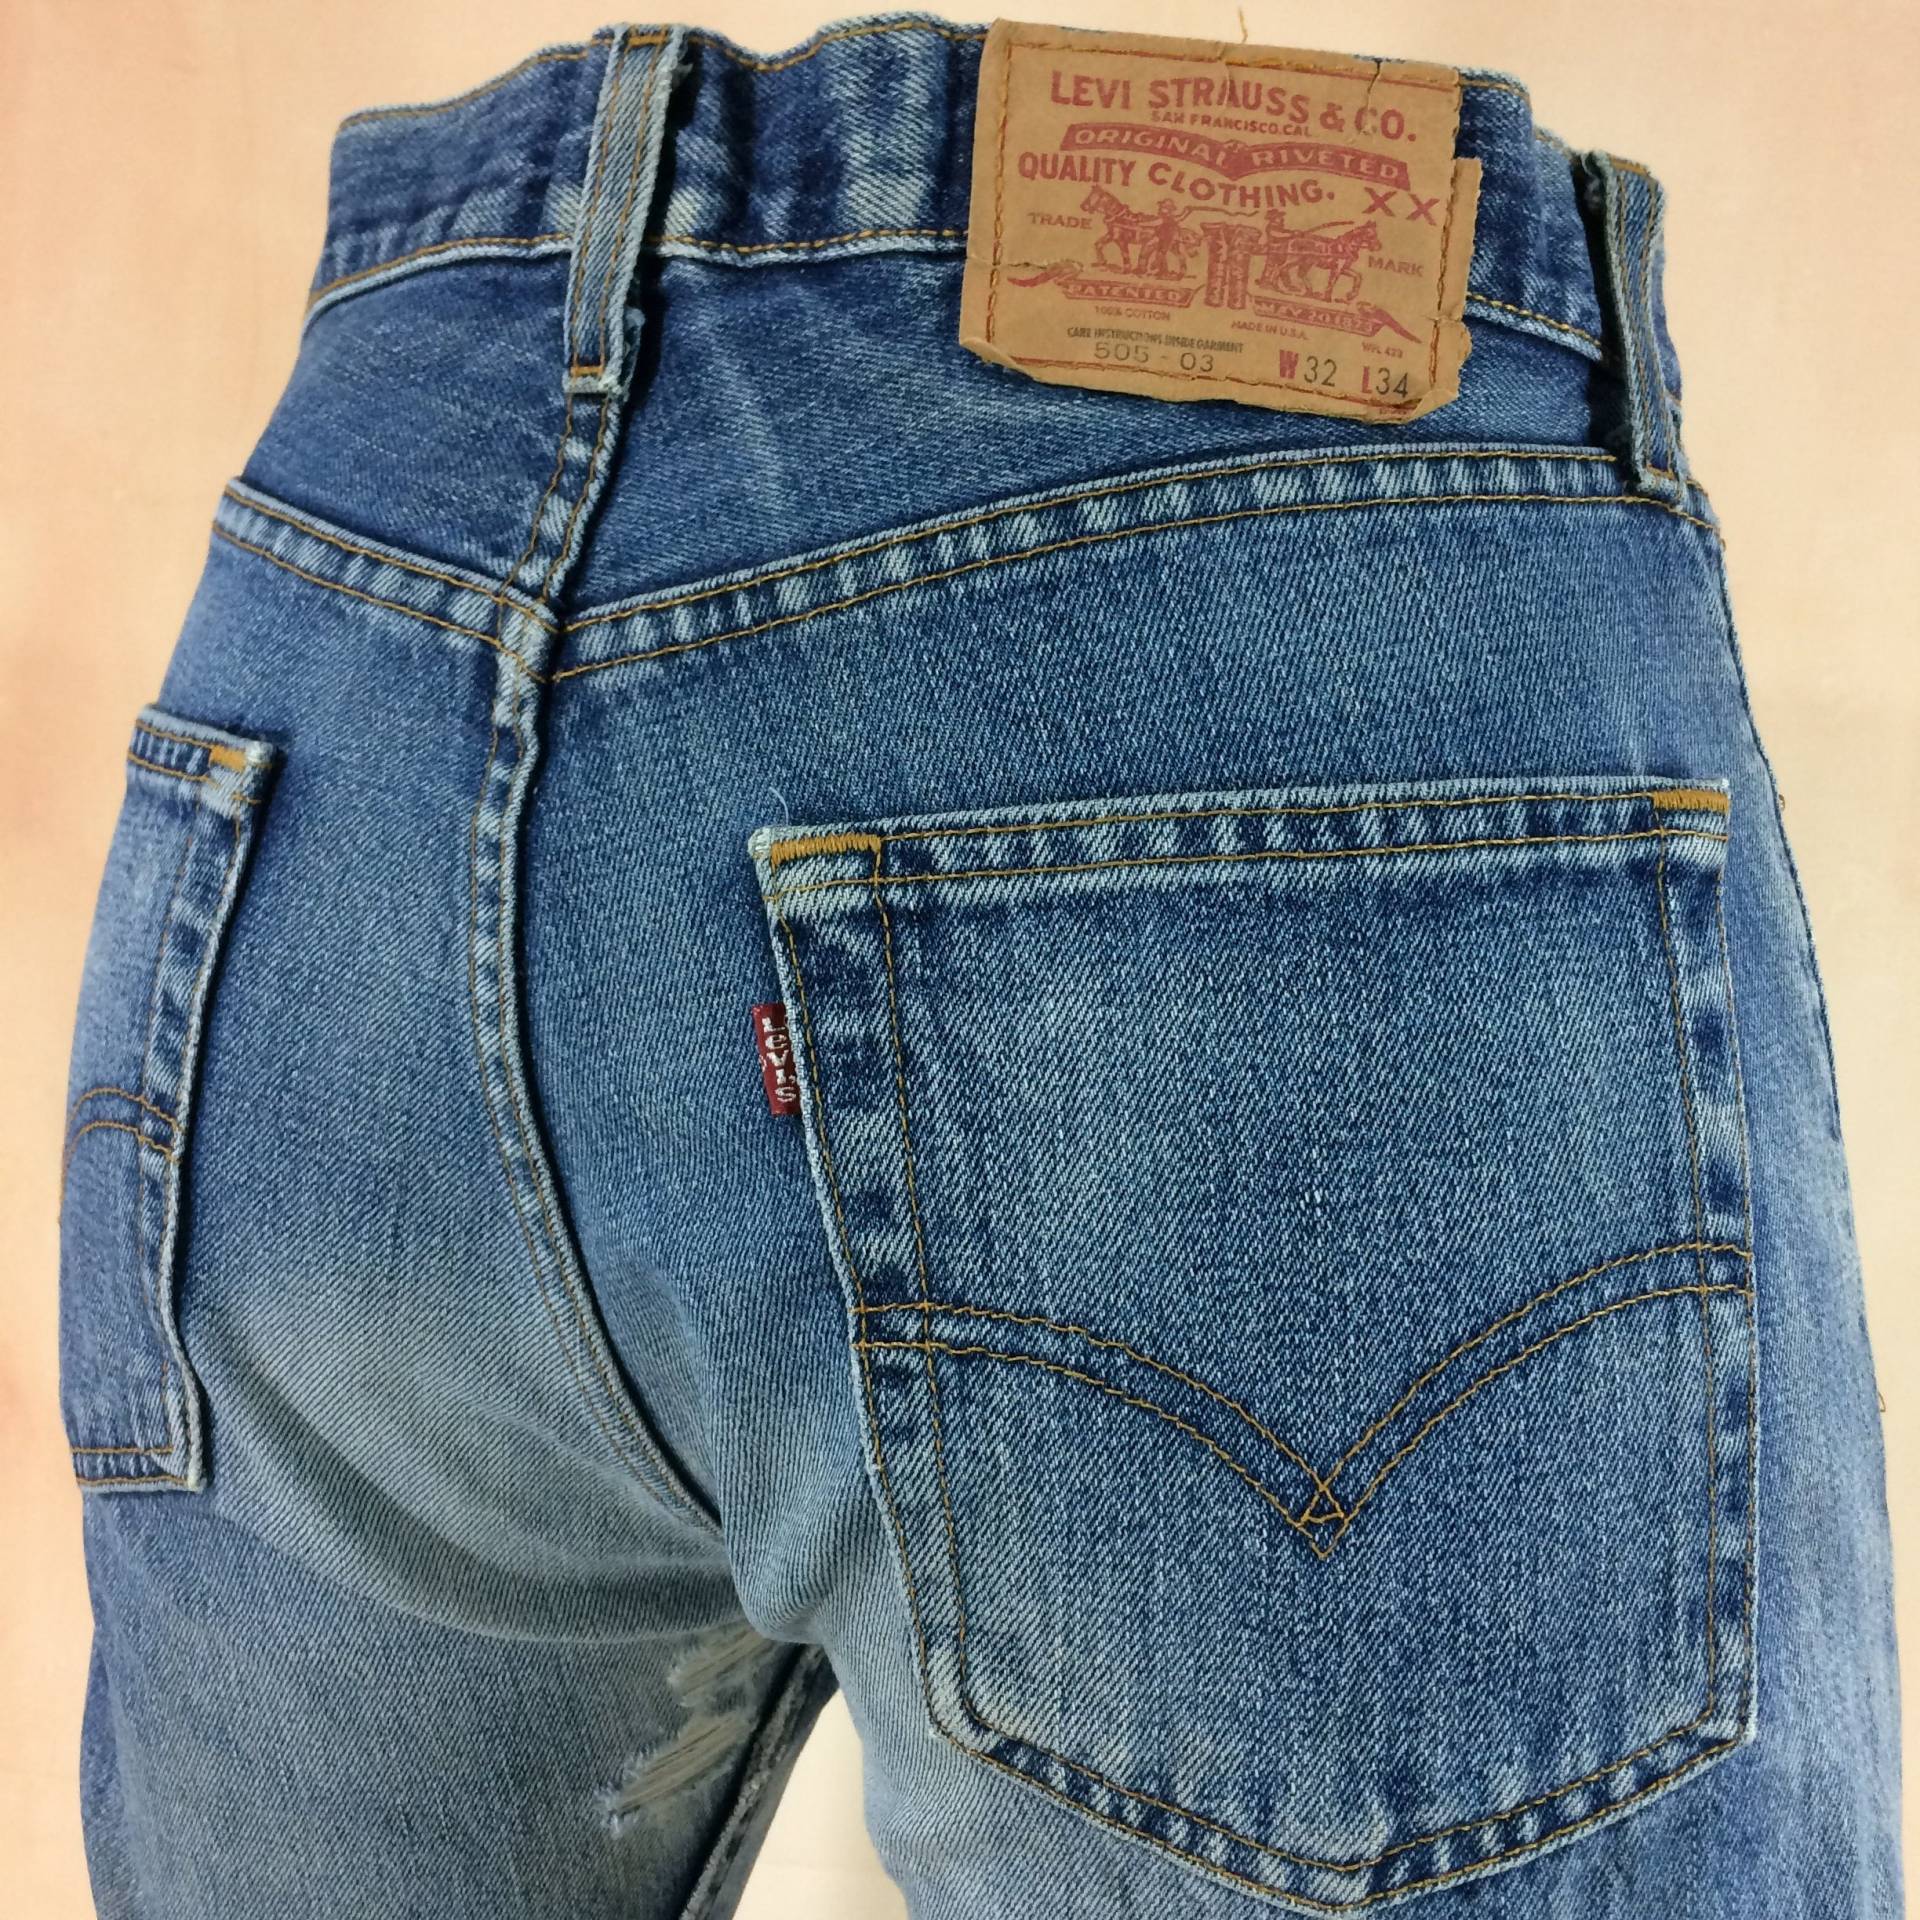 Größe 33 Vintage Levis 505 Distressed Zerrissene Jeans W33 L25 Hoch Taillierte Boyfriends Mom Made in Usa Taille 33" von AberyApparelClothing